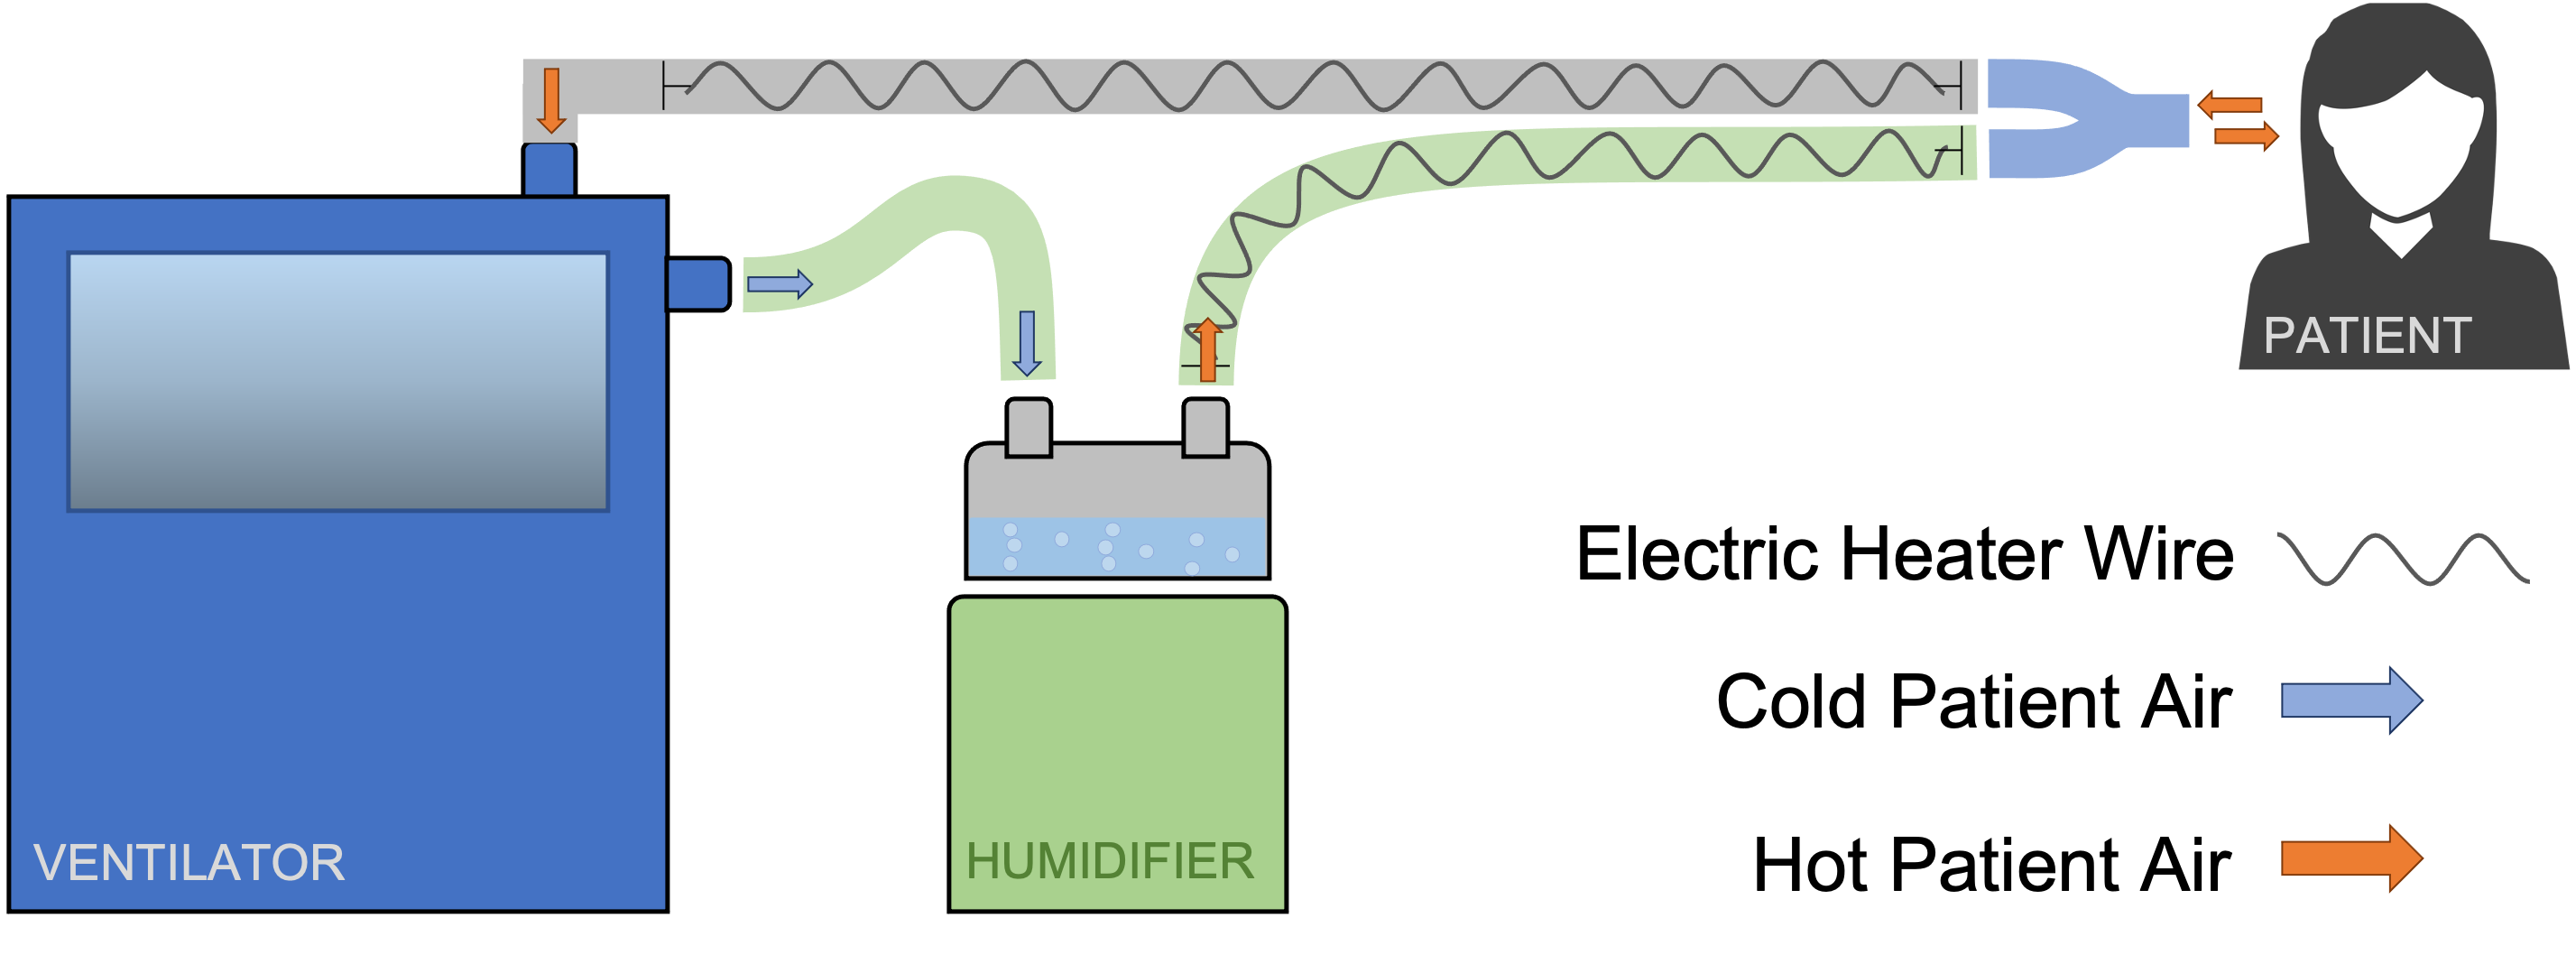 Humidifier-Setup-Diagram(patient).png